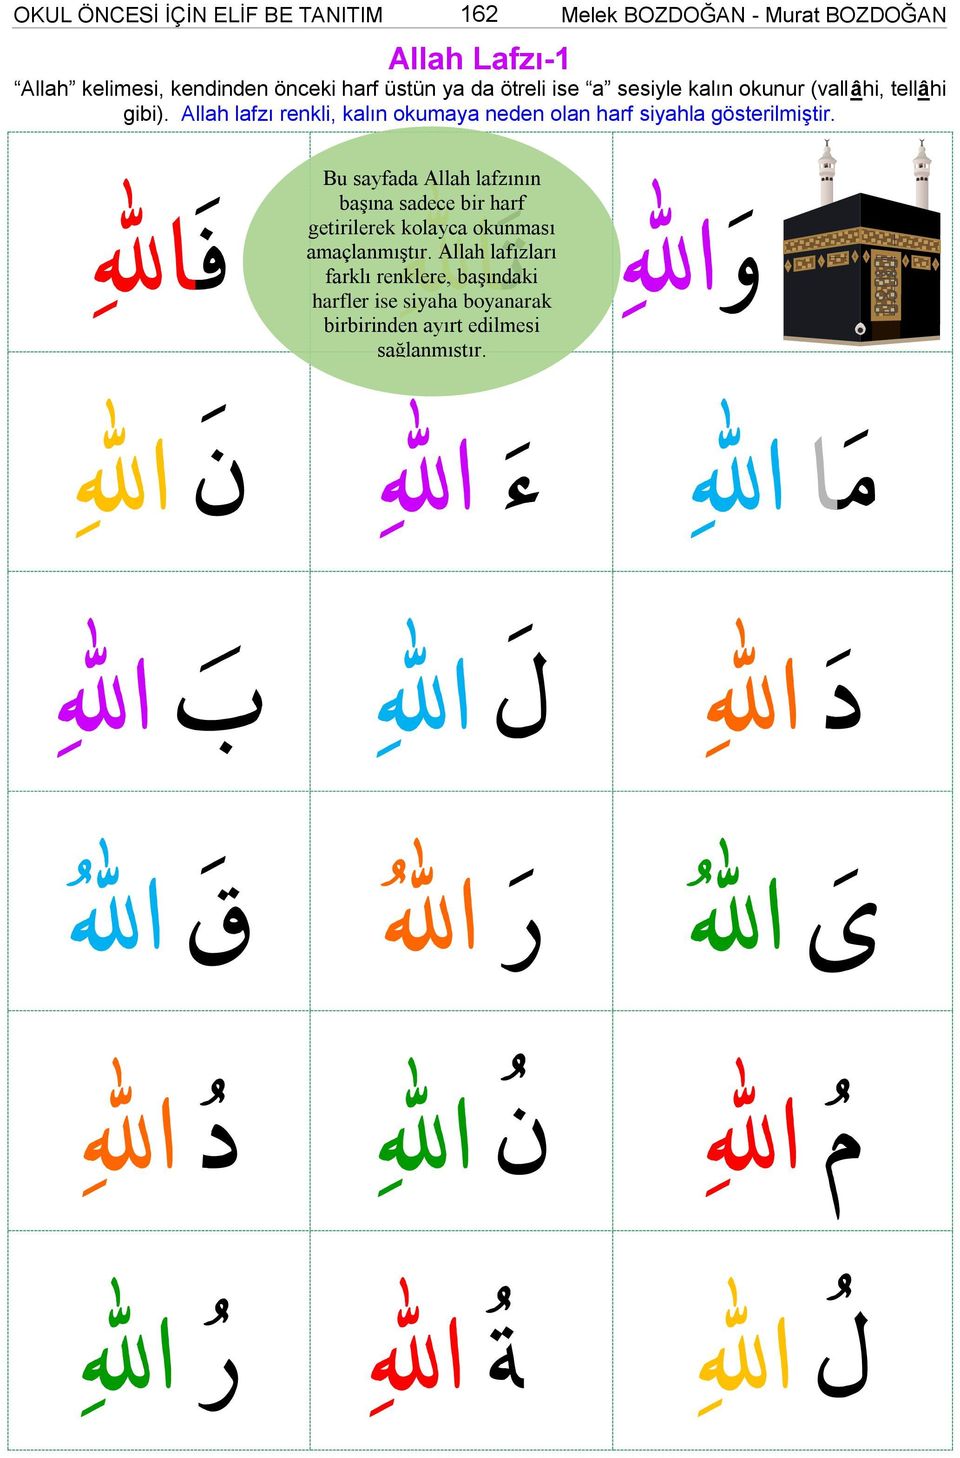 Bu sayfada Allah lafzının başına sadece bir harf getirilerek kolayca okunması amaçlanmıştır.